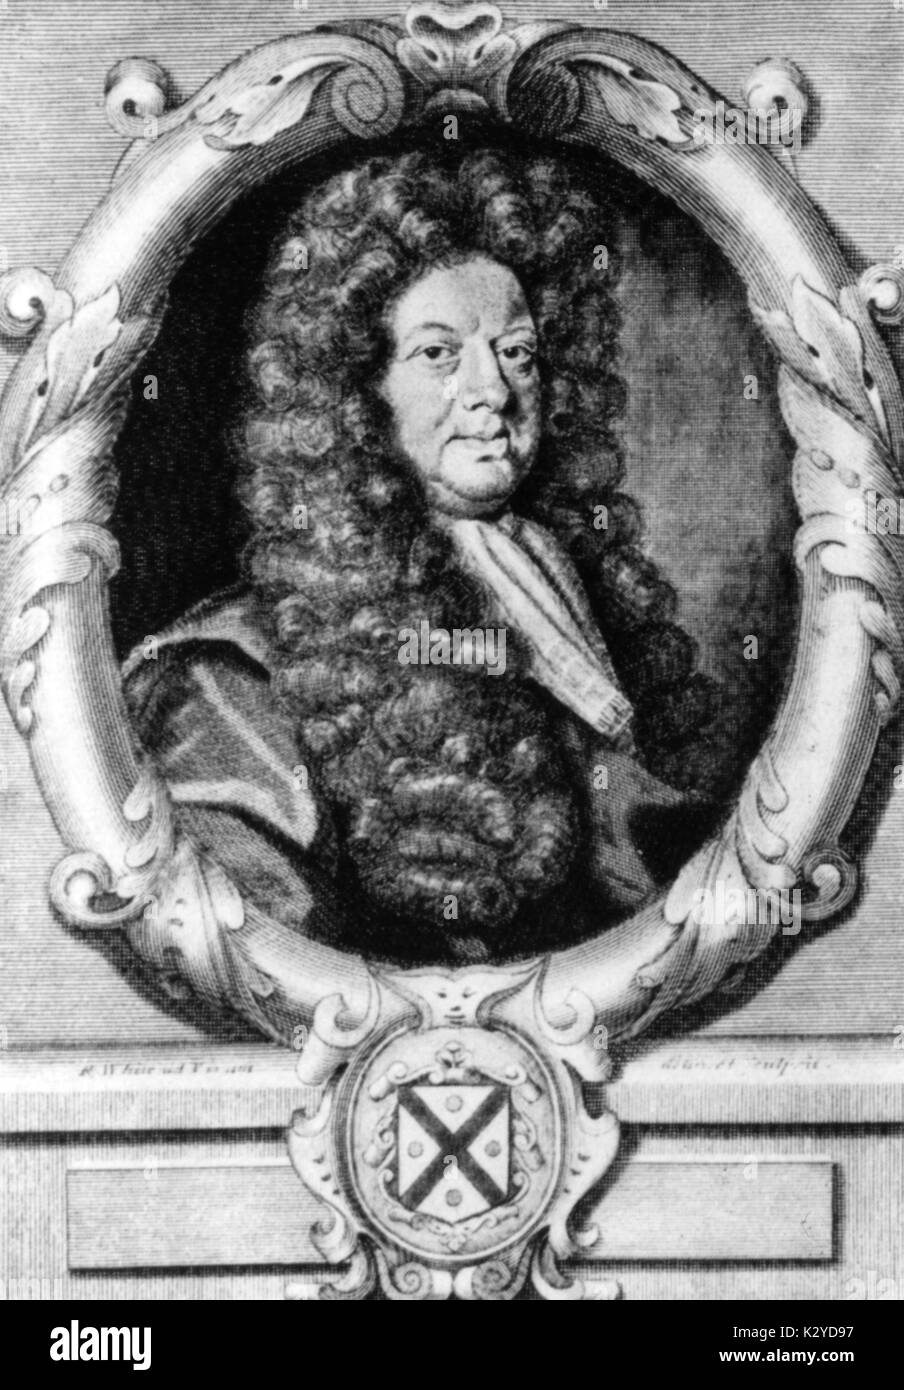 John Blow, compositeur et organiste, 1649-1708 Banque D'Images